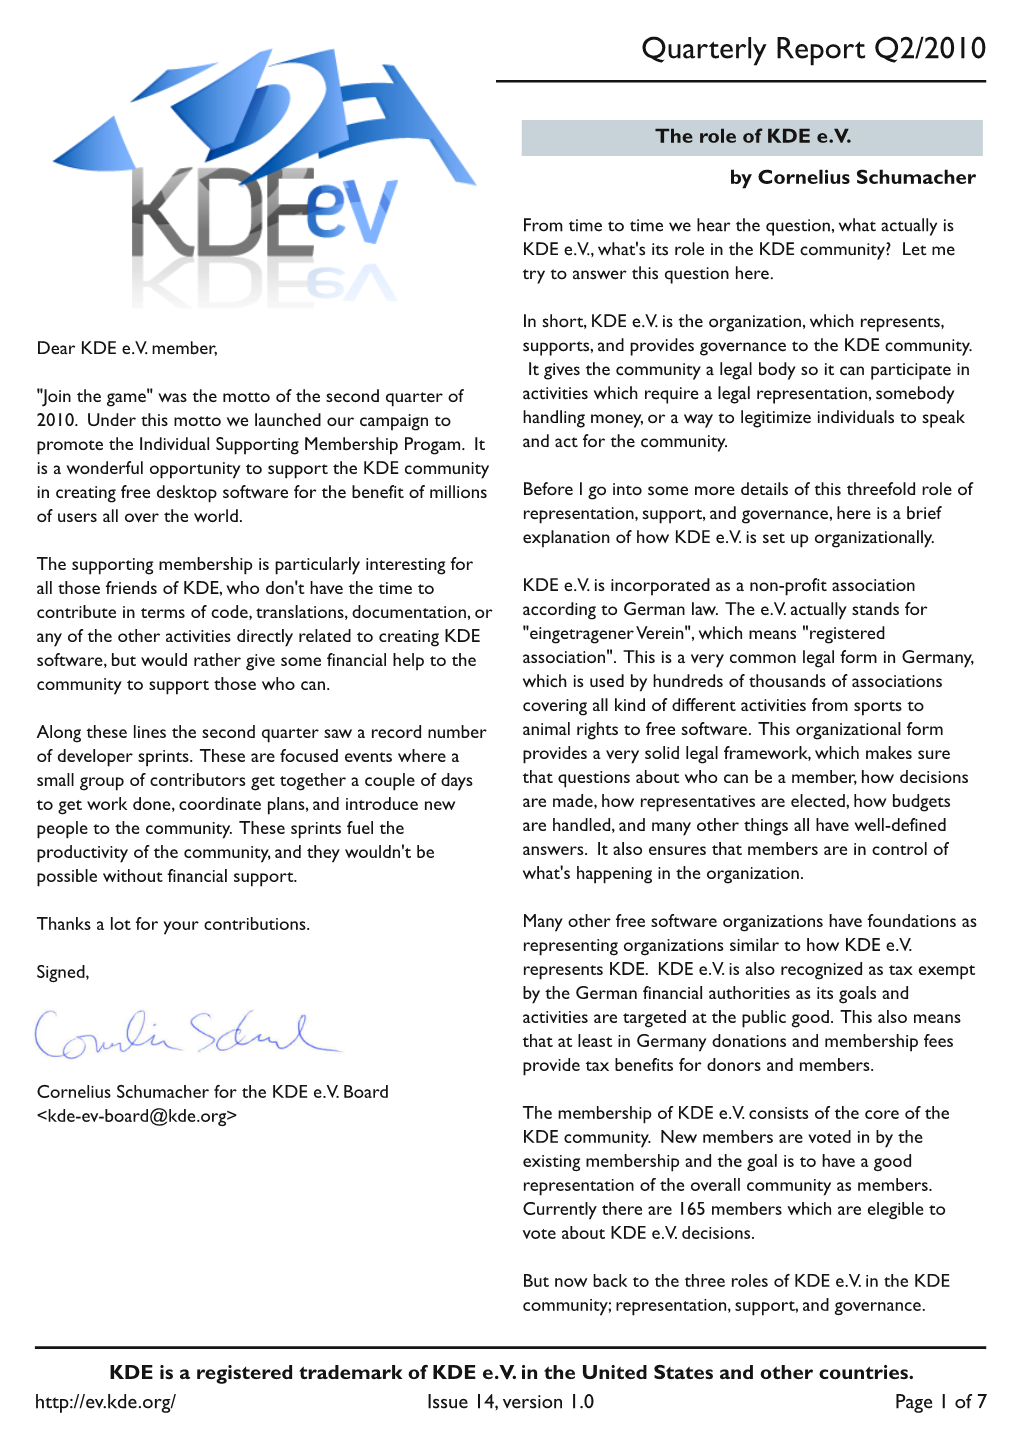 KDE E.V.'S Quarterly Report Q2 2010